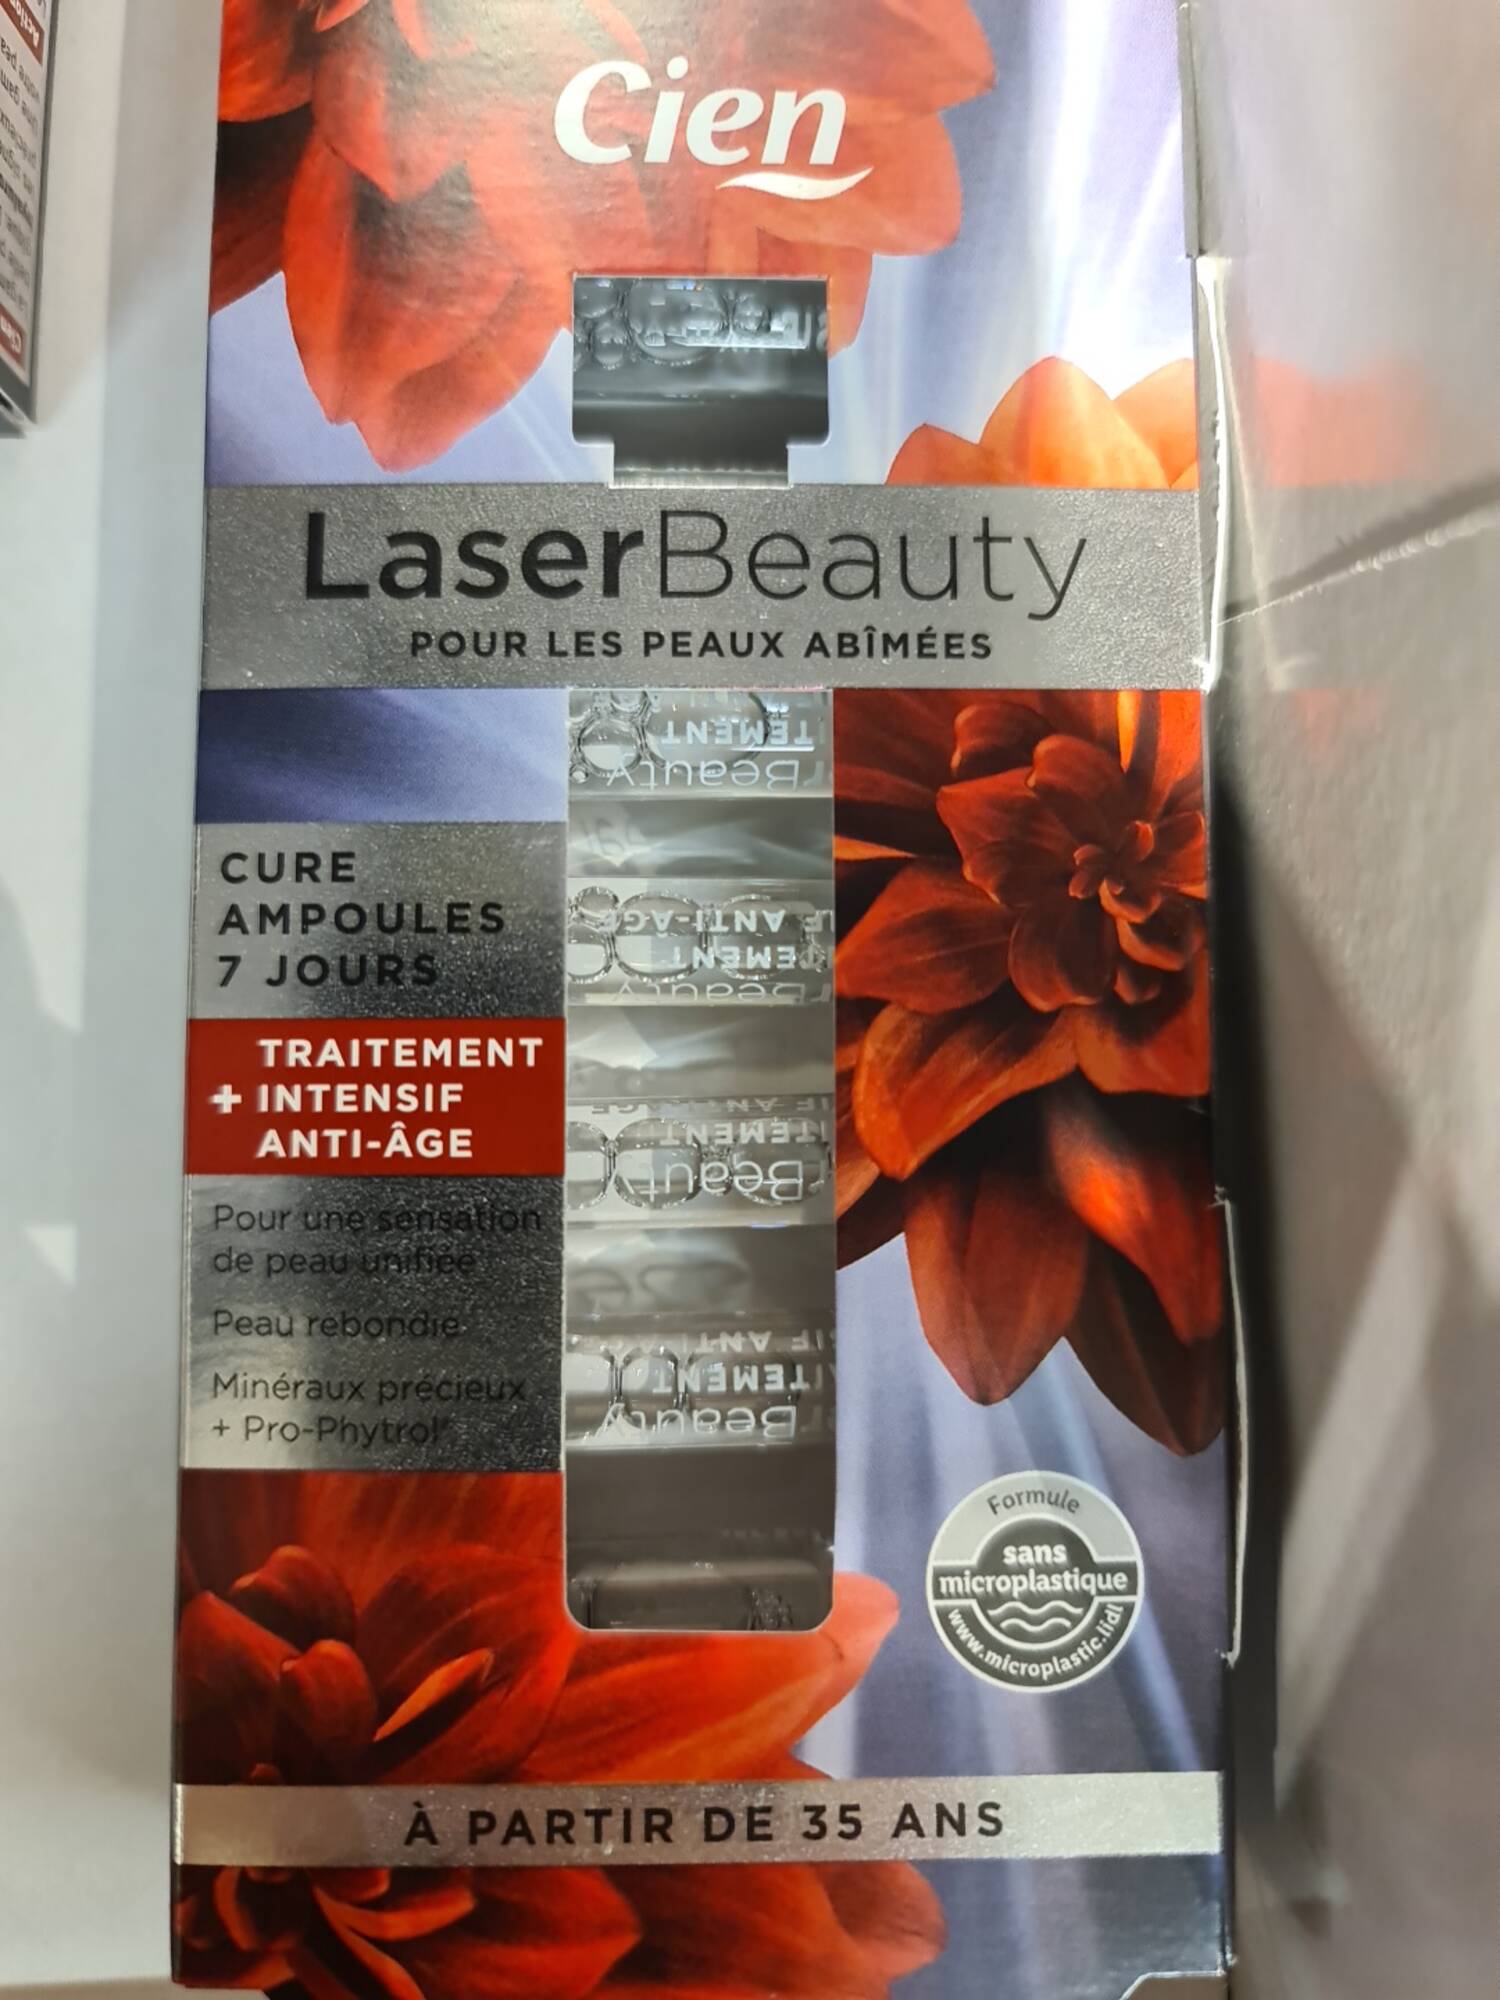 CIEN - Laser Beauty - Cure ampoules 7 jours